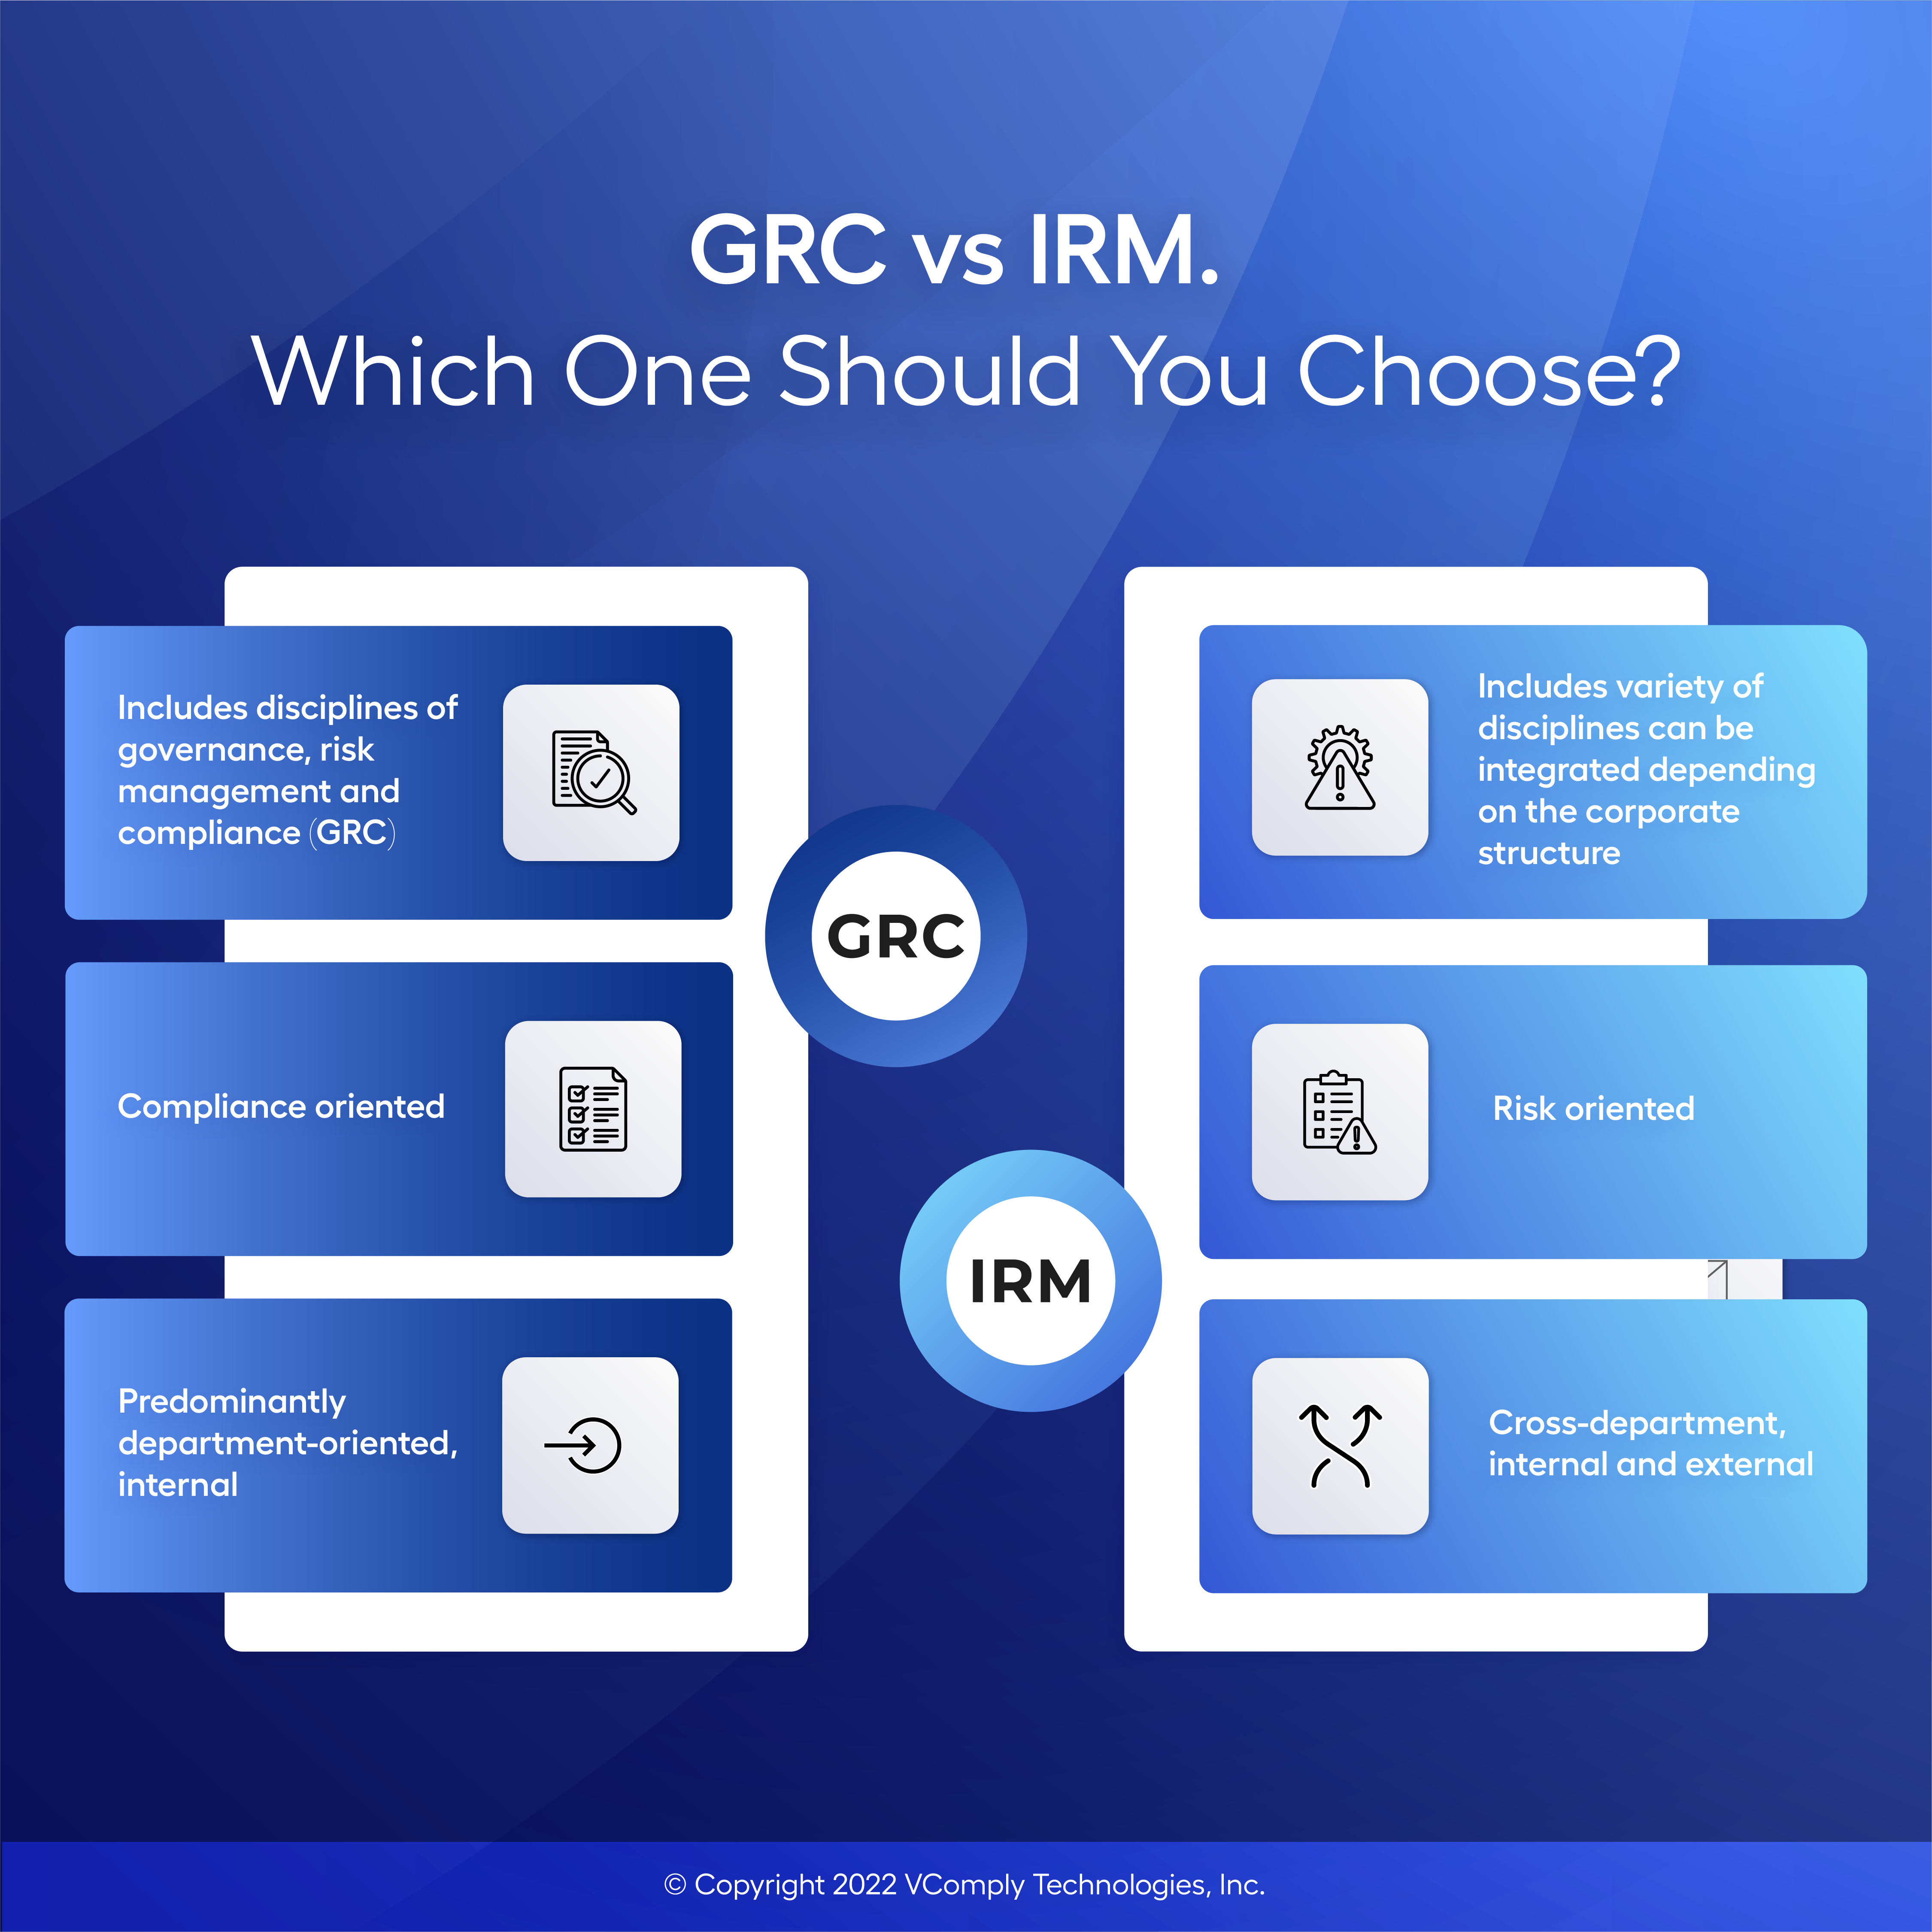 GRC vs IRM